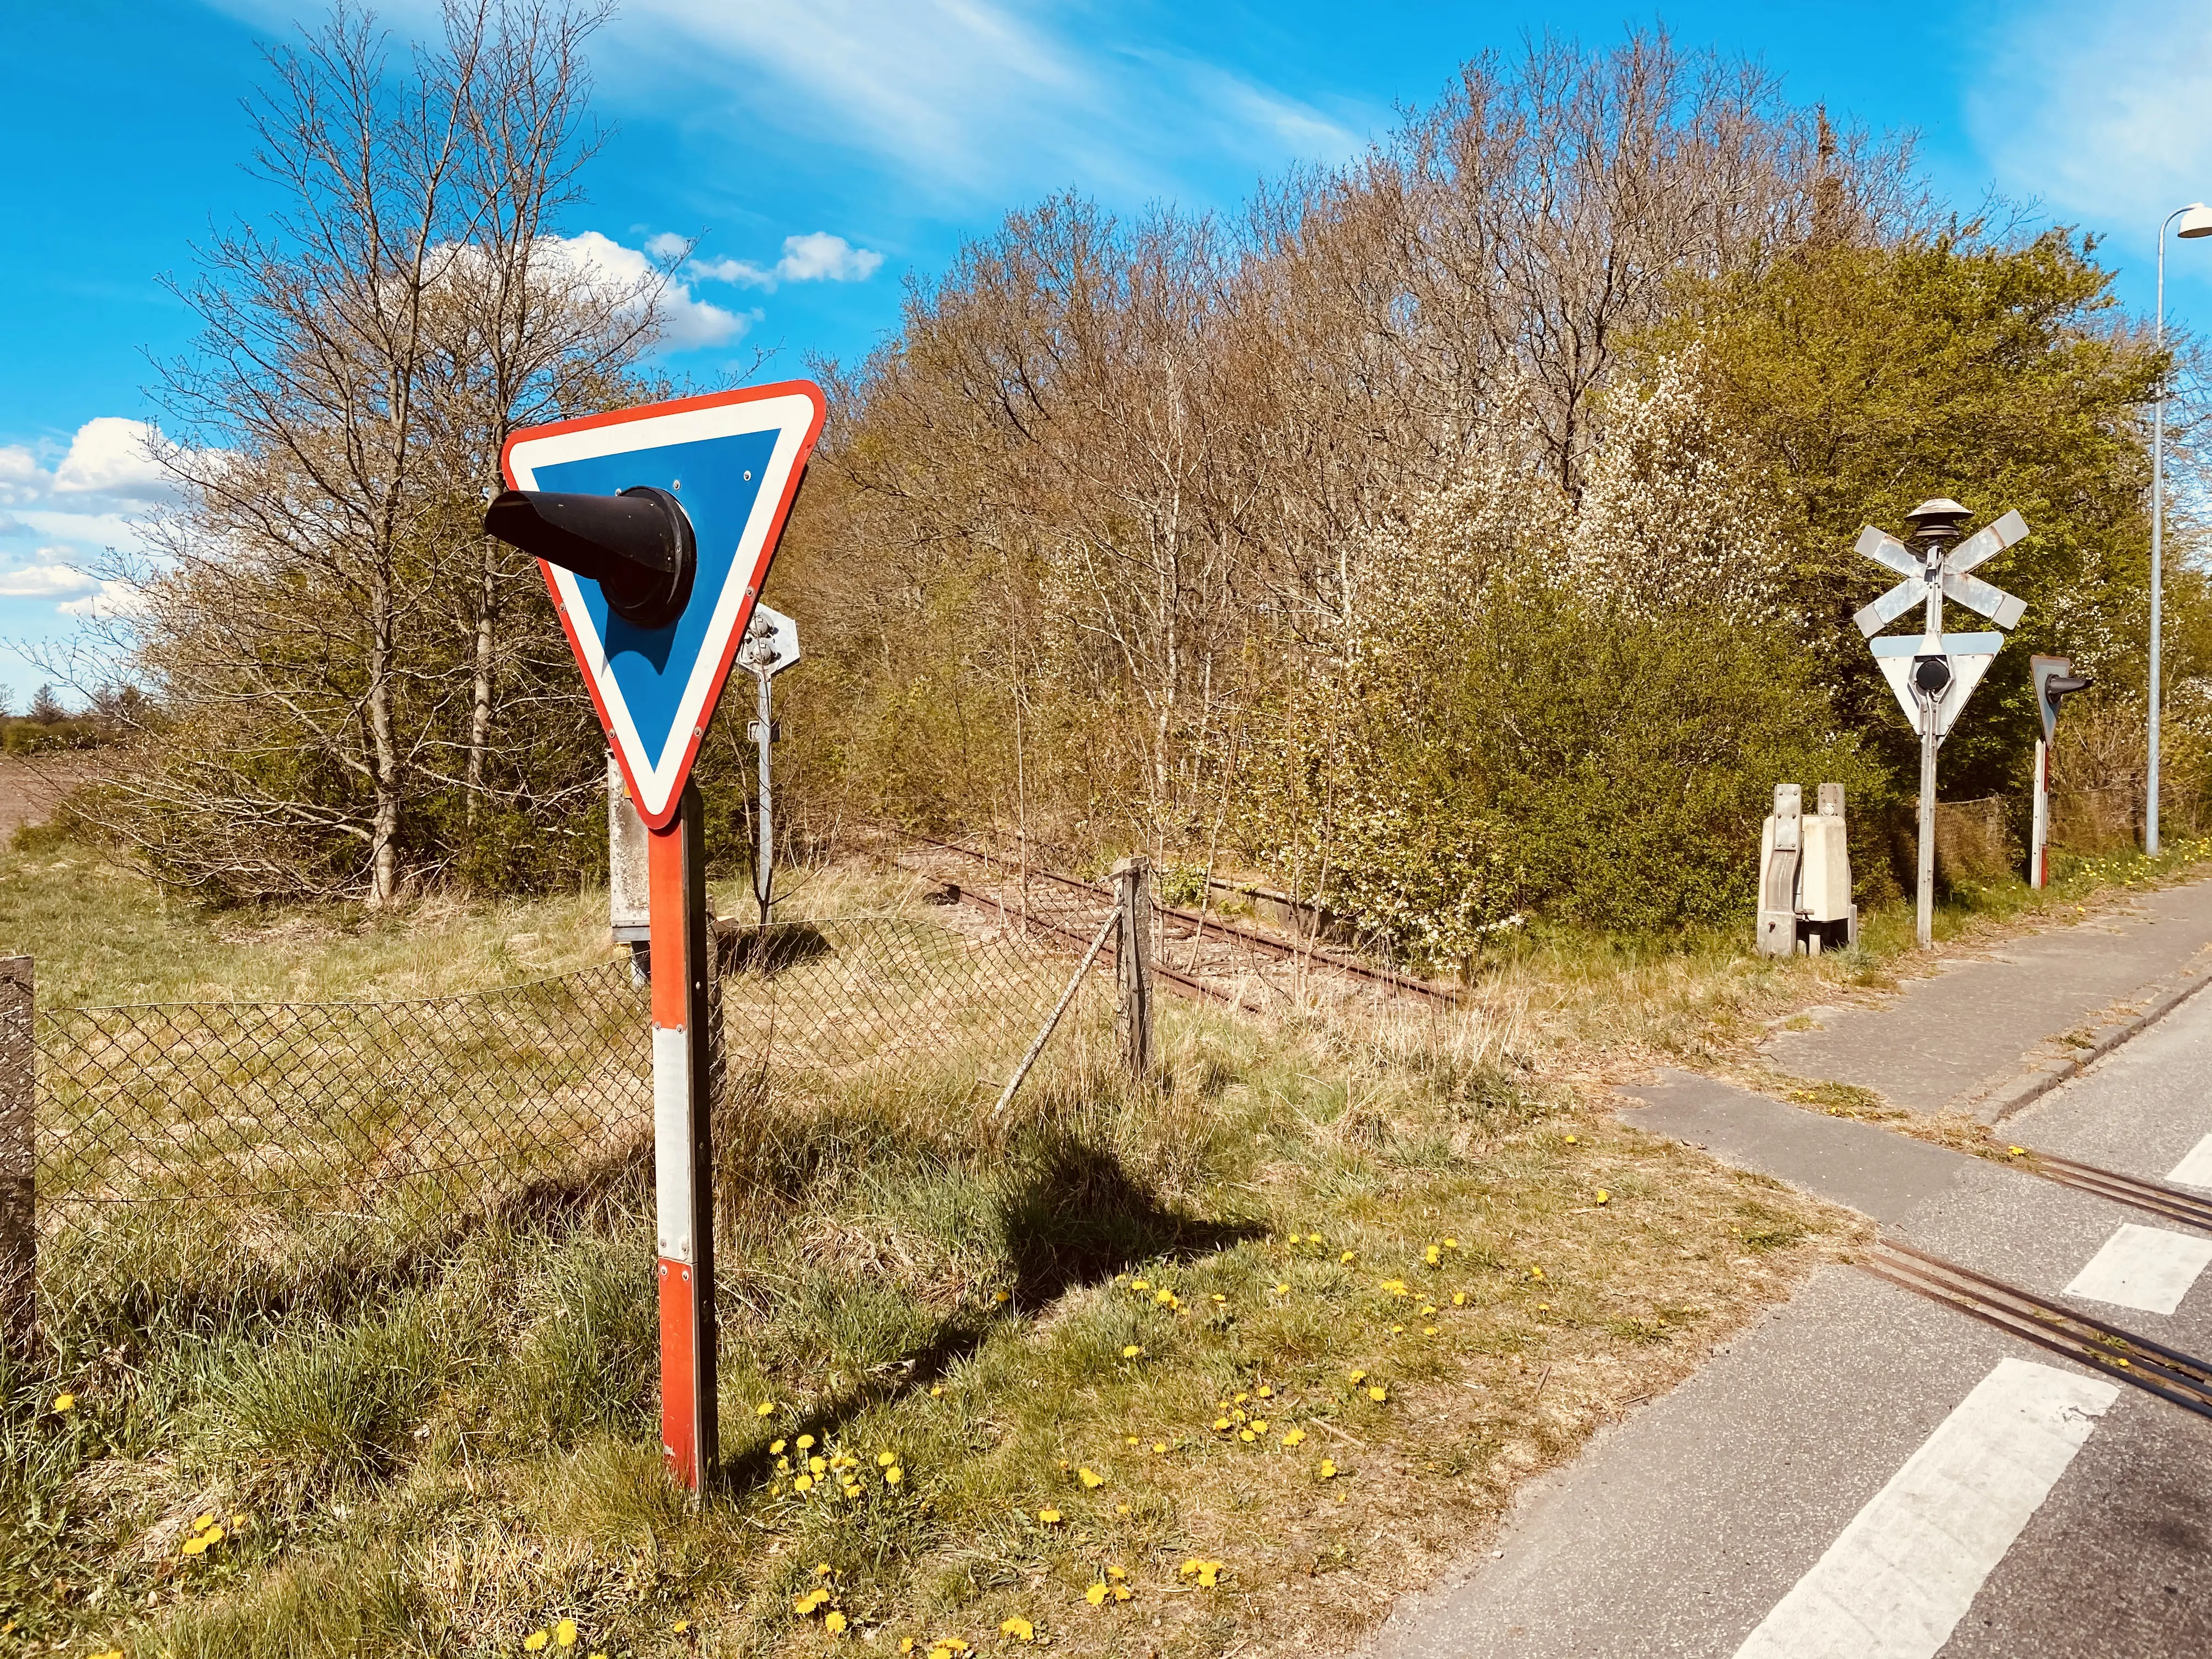 Billede af Terkelsbøl Trinbræt med Sidespor, som er nedrevet, men den har ligget her - perronkanten kan stadig ses.